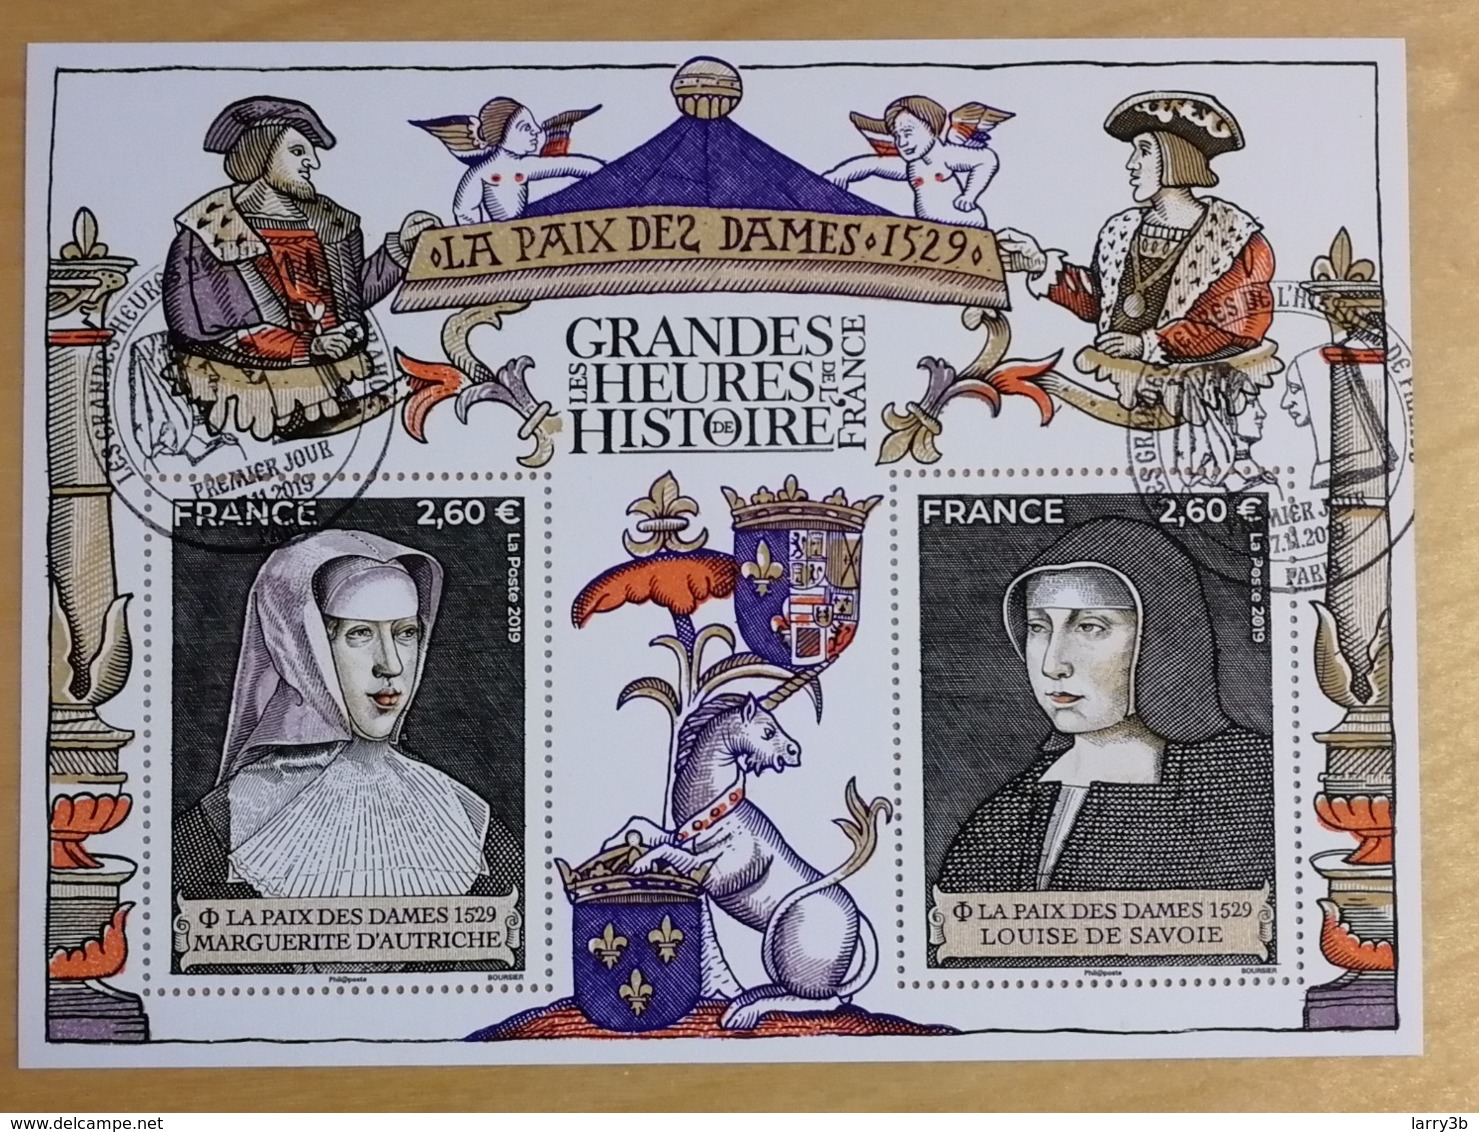 BF 2019 - BLOC FEUILLET - LES GRANDES HEURES DE L'HISTOIRE FRANCE 2019 - Oblitéré 1er JOUR - Paris 07/11/2019 - Used Stamps